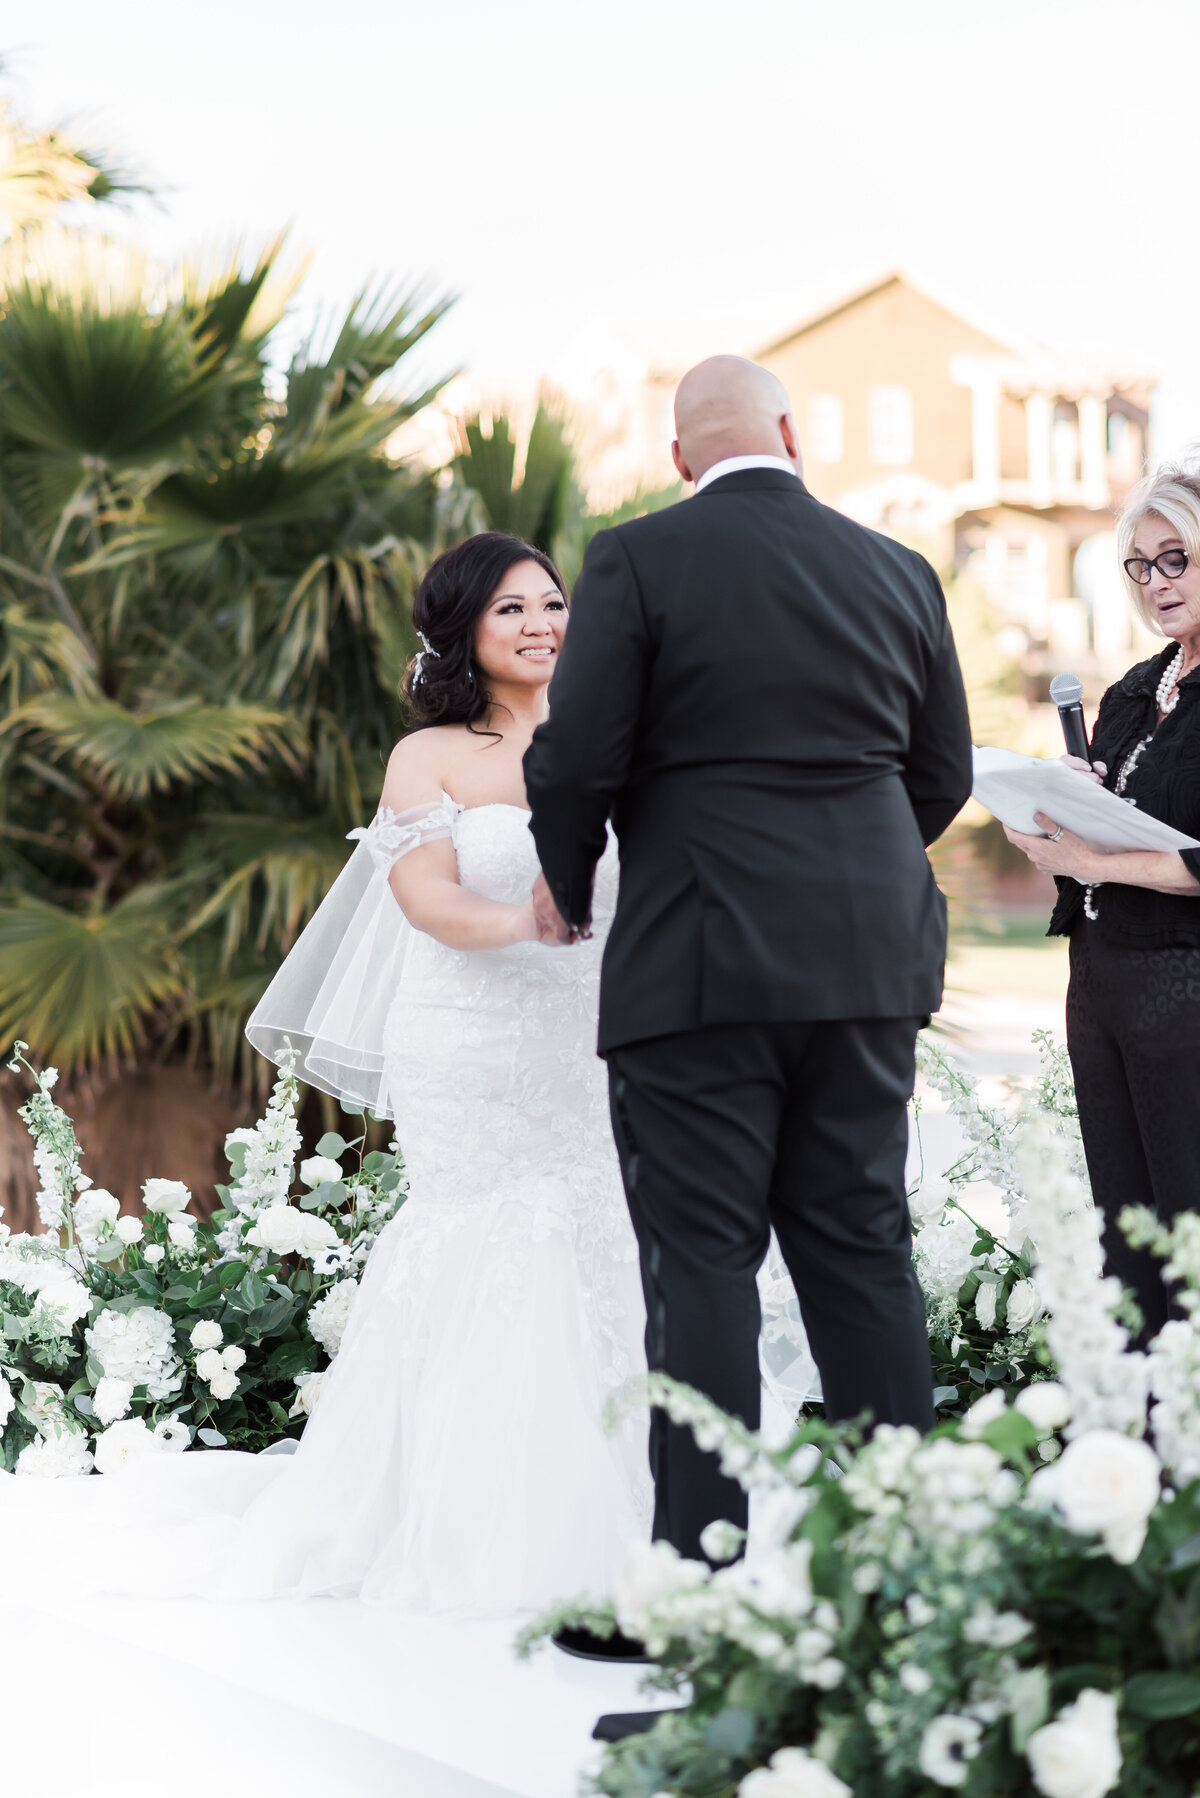 Stunning Wedding at Reflection Bay in Las Vegas - 31